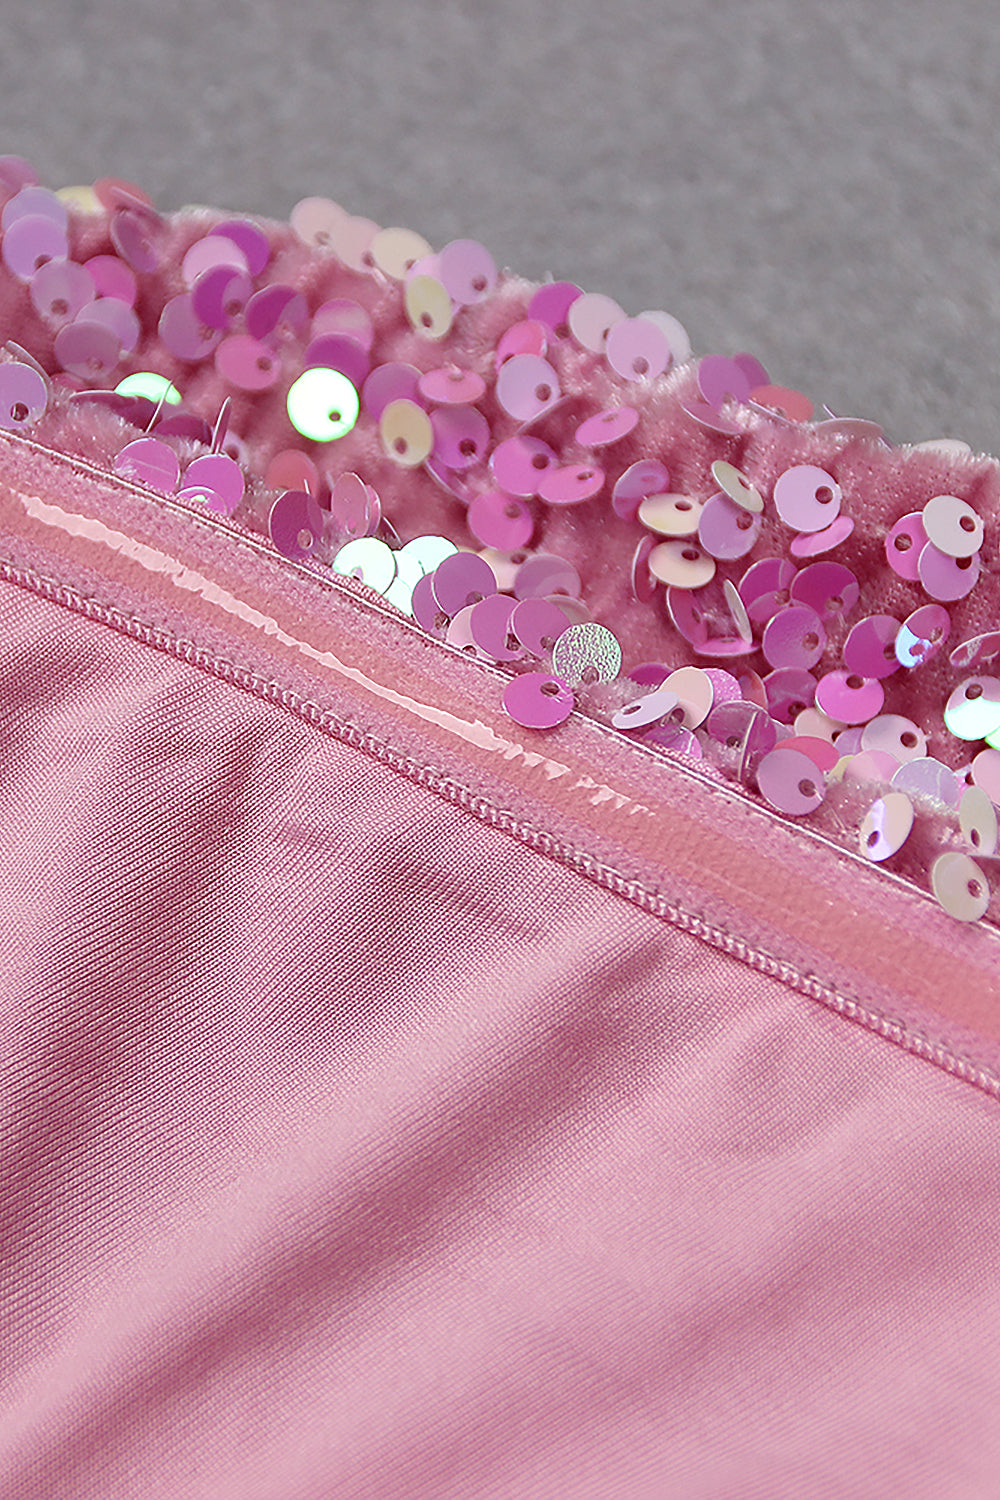 Une épaule manches courtes dos nu robe à paillettes mode en rose bleu lavande